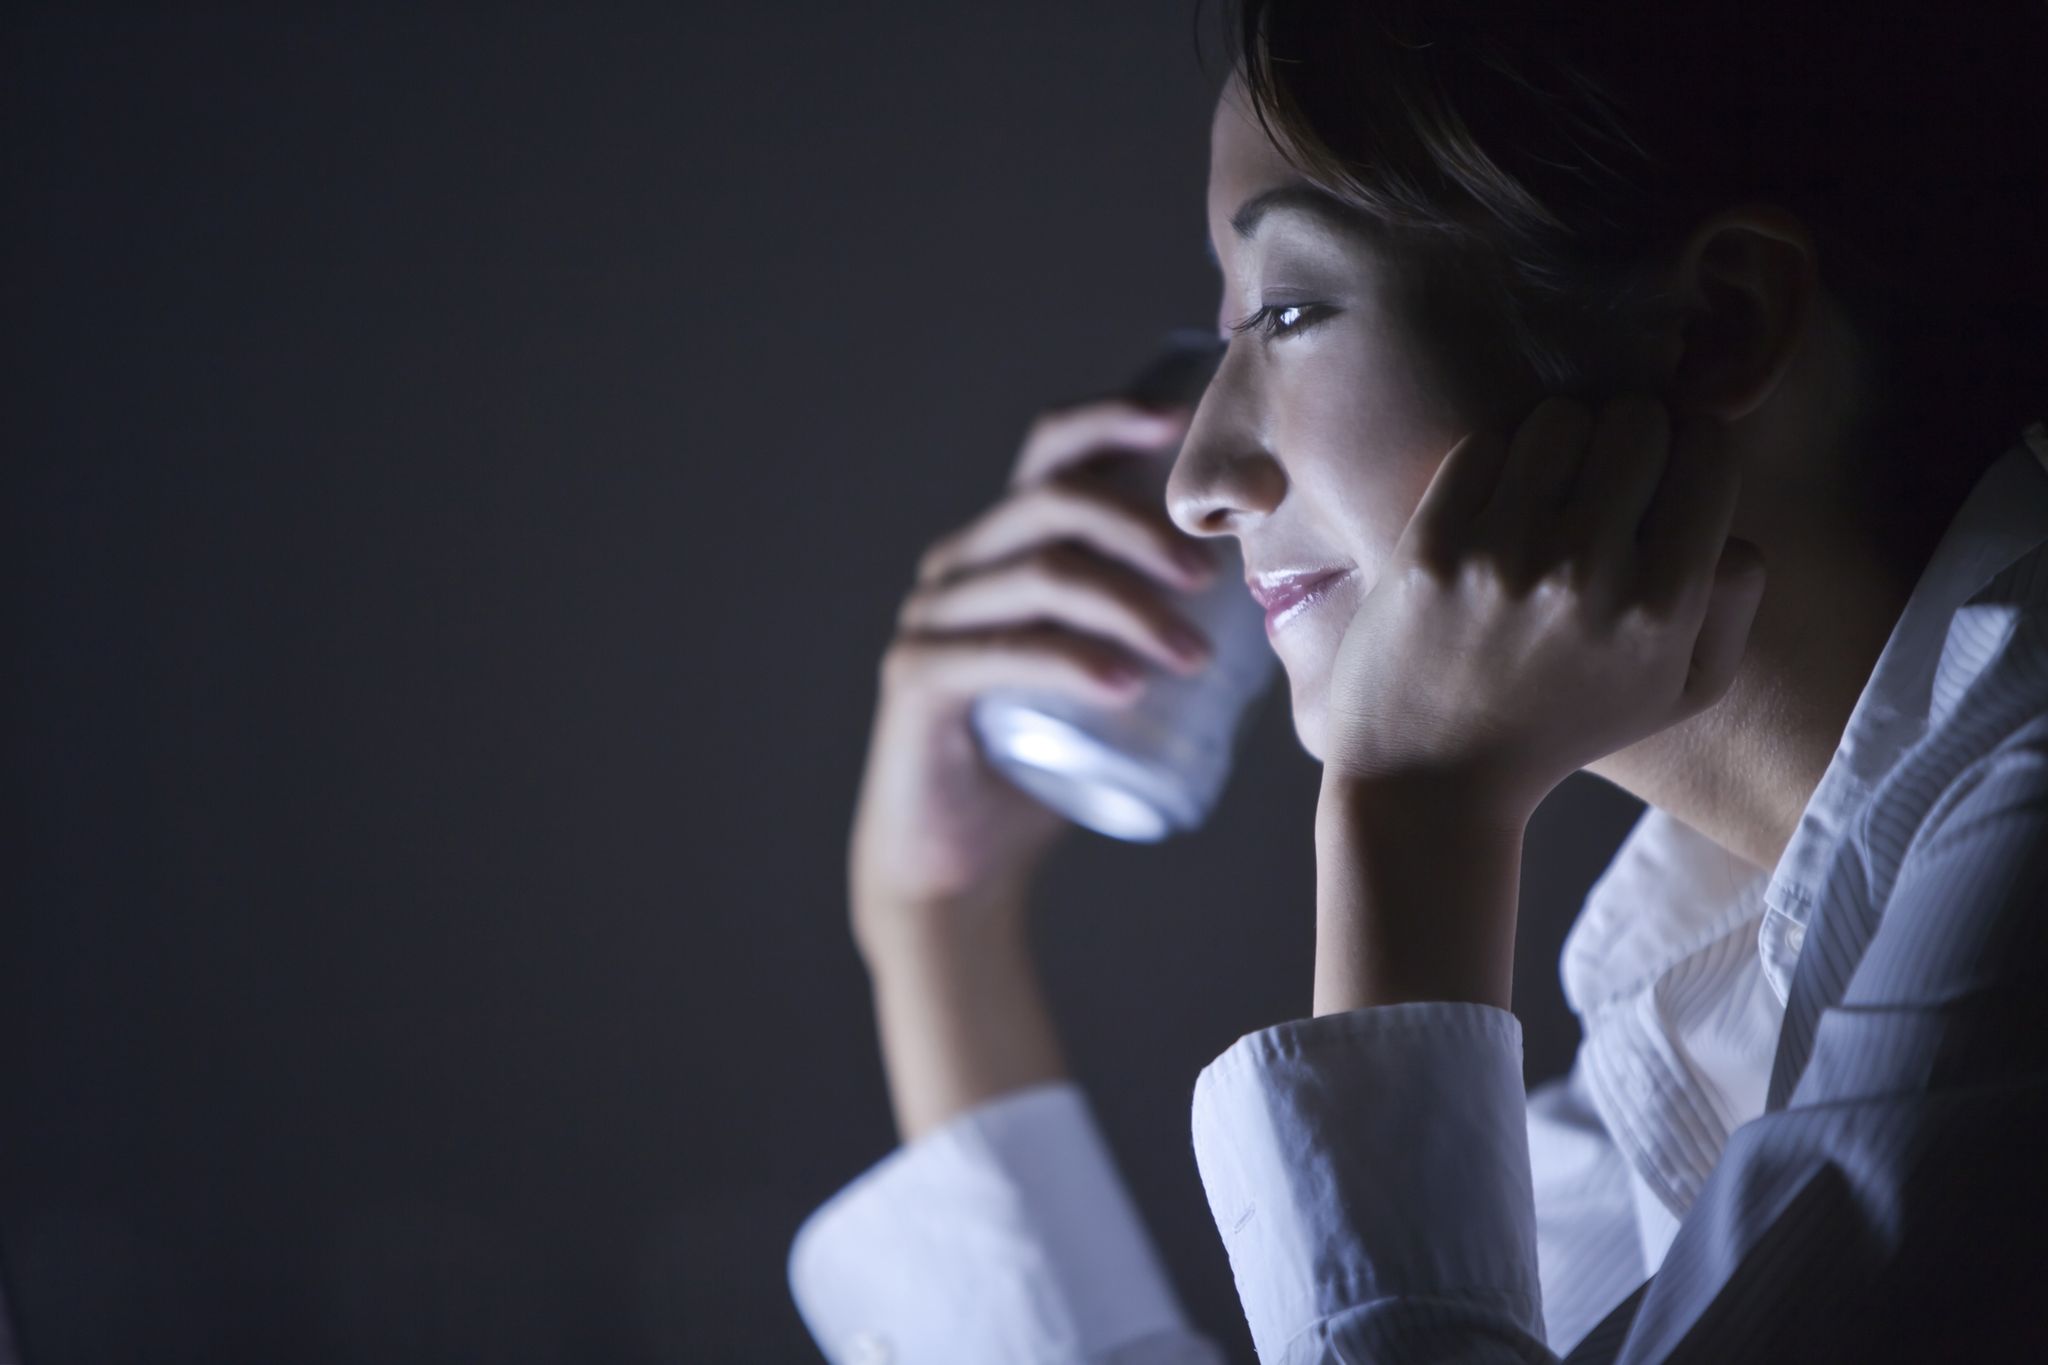 晩酌,コンビニおつまみ,businesswoman using laptop in the dark, tokyo prefecture, japan